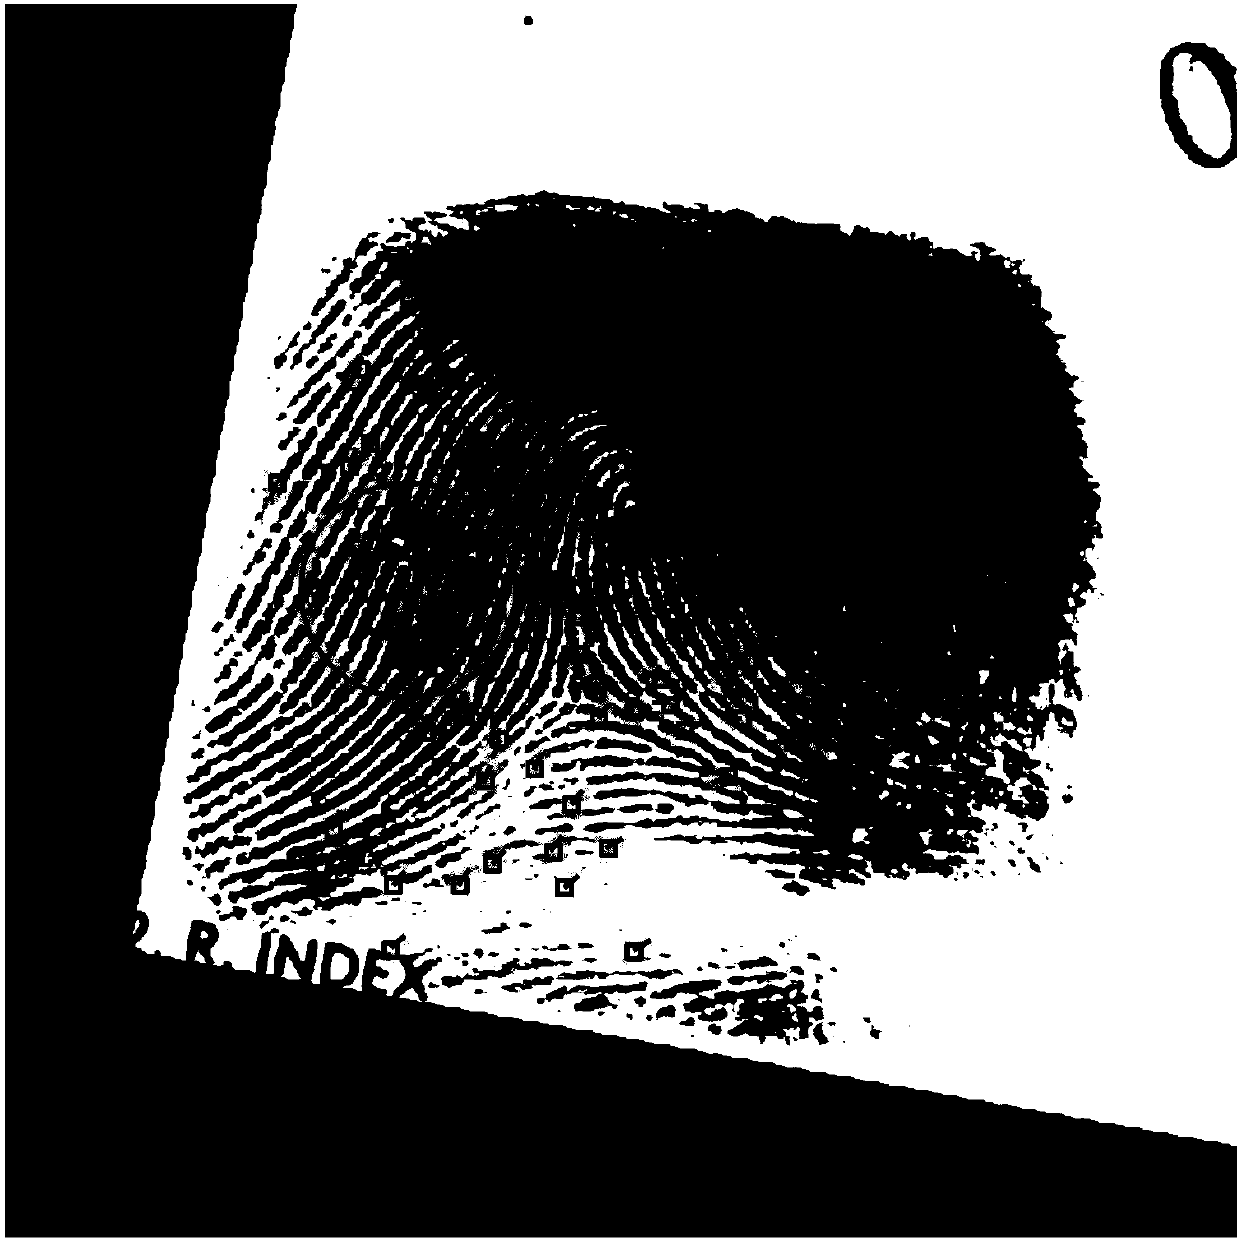 Compression method and system for fingerprint descriptor